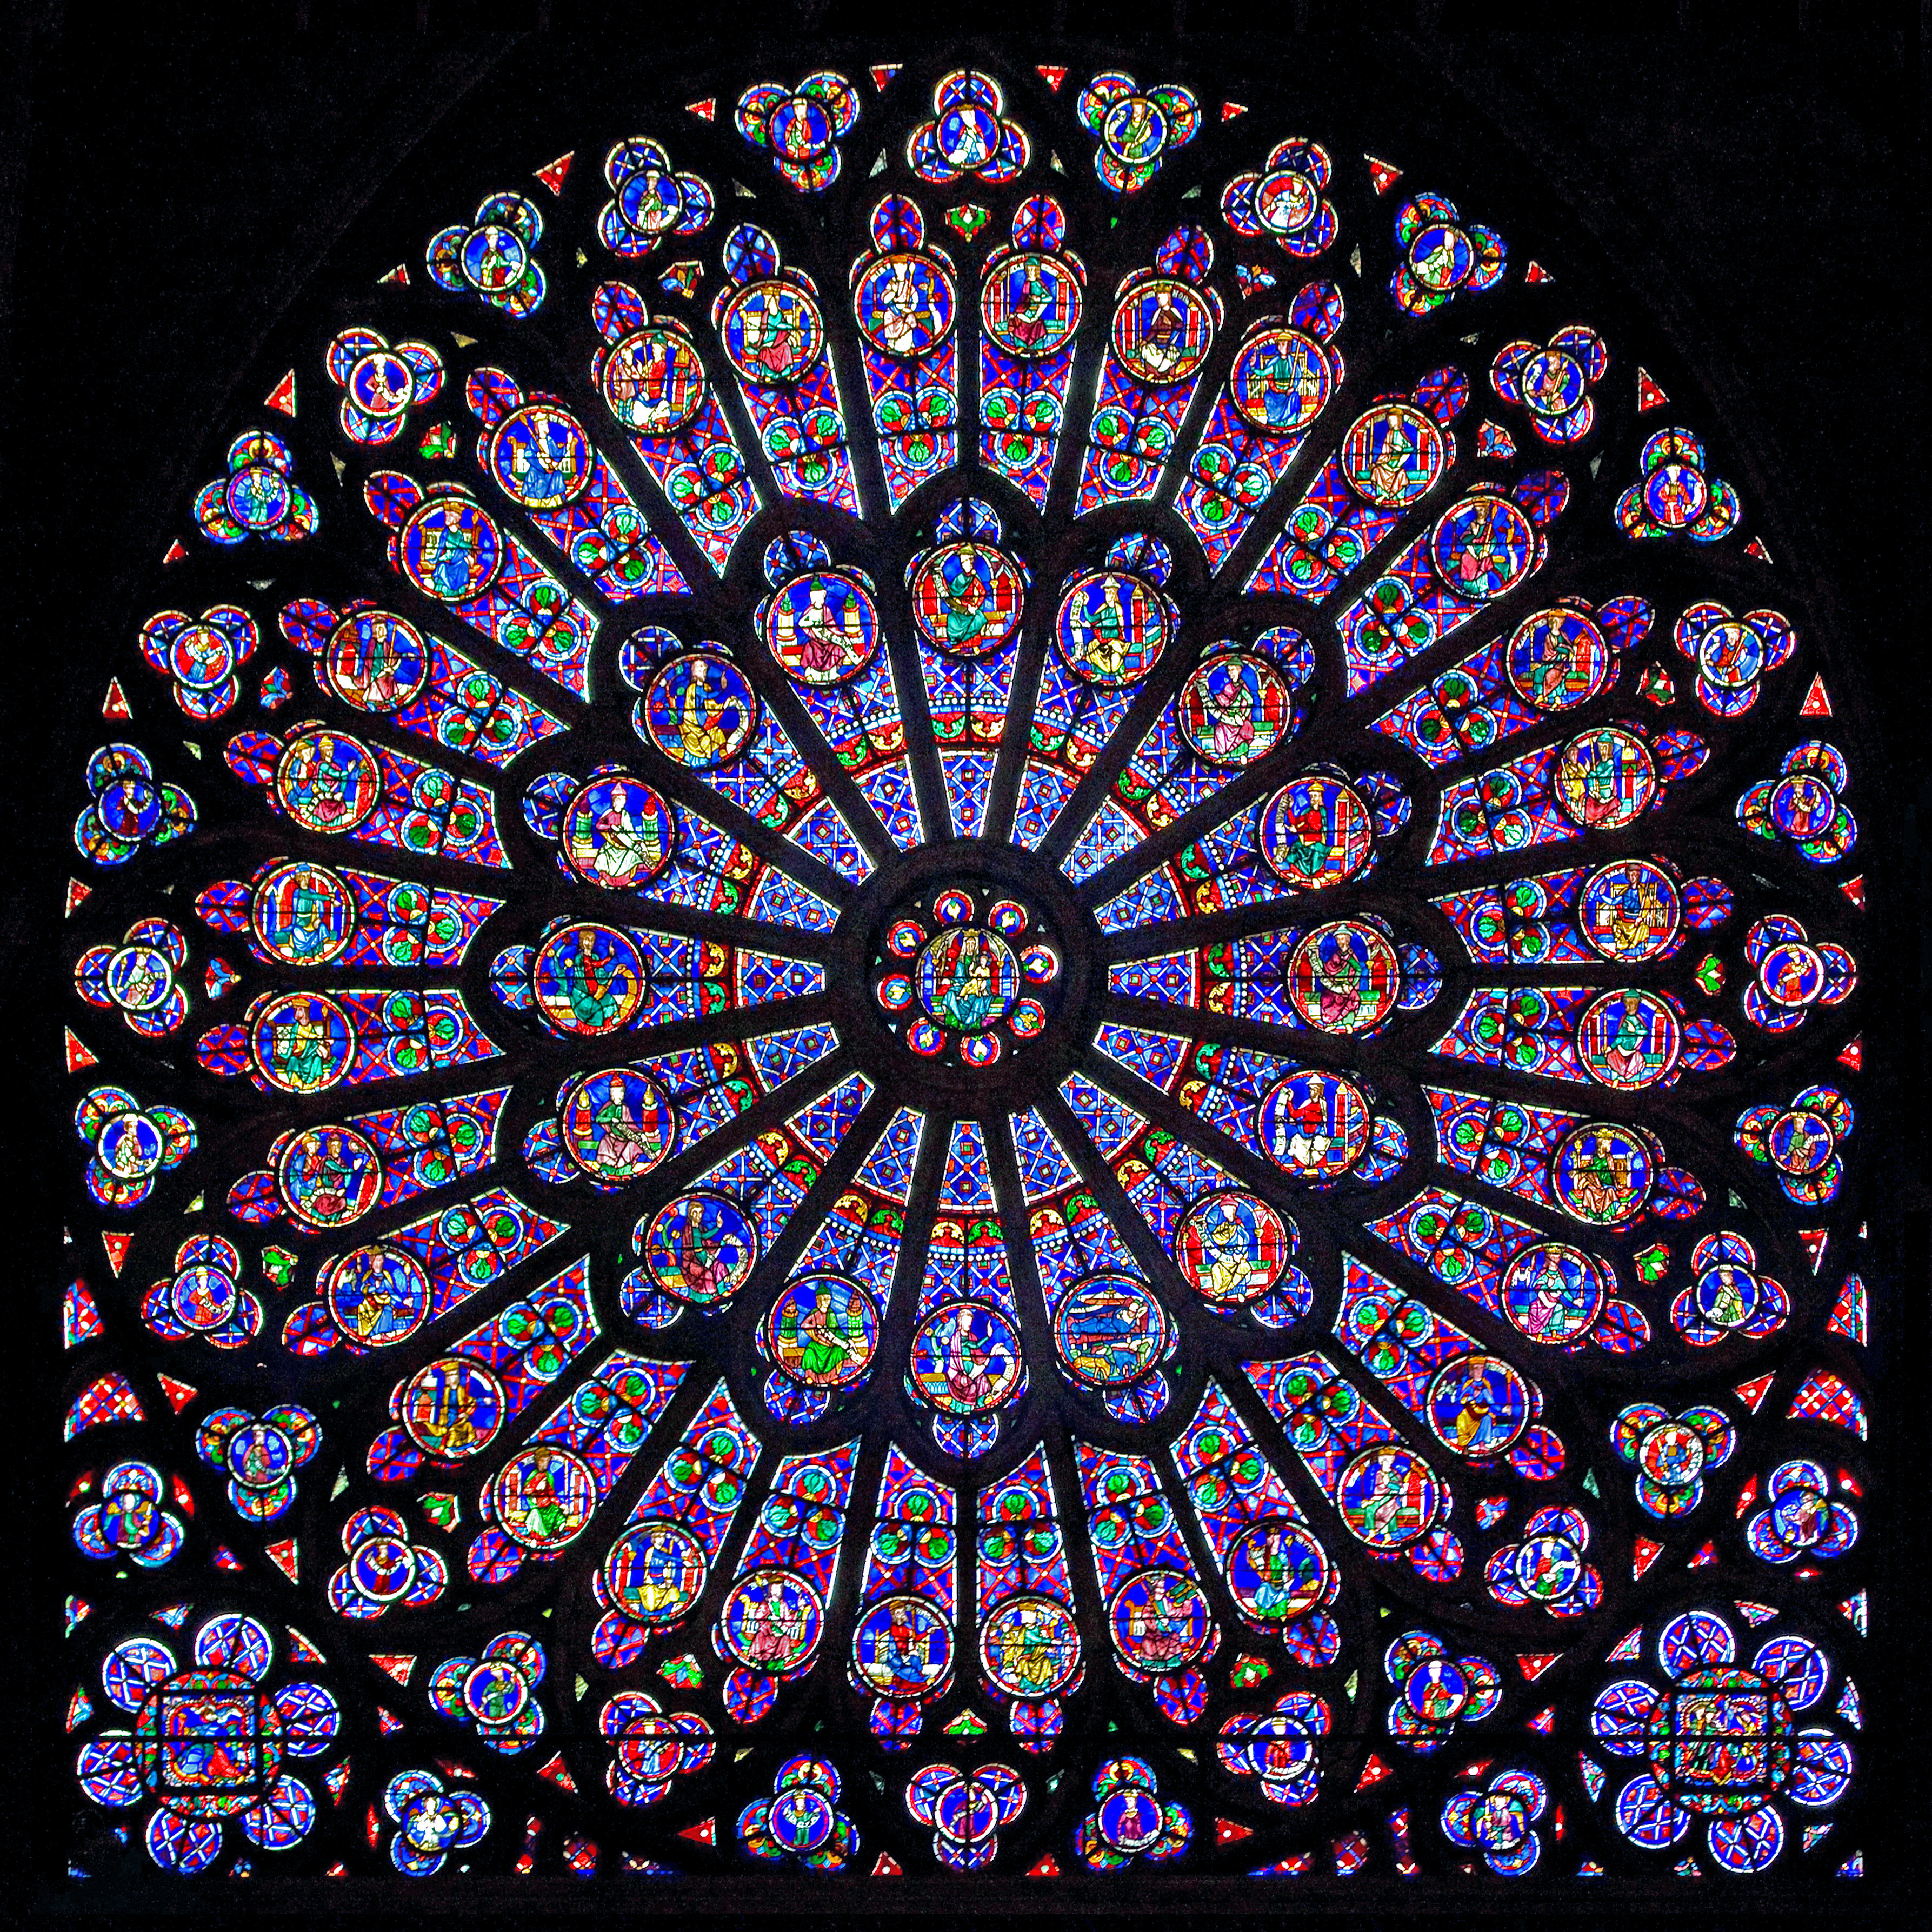 Notre Dame Katedrali by Bilinmeyen Sanatçı - 1163-1345 - 138 x 48 m 